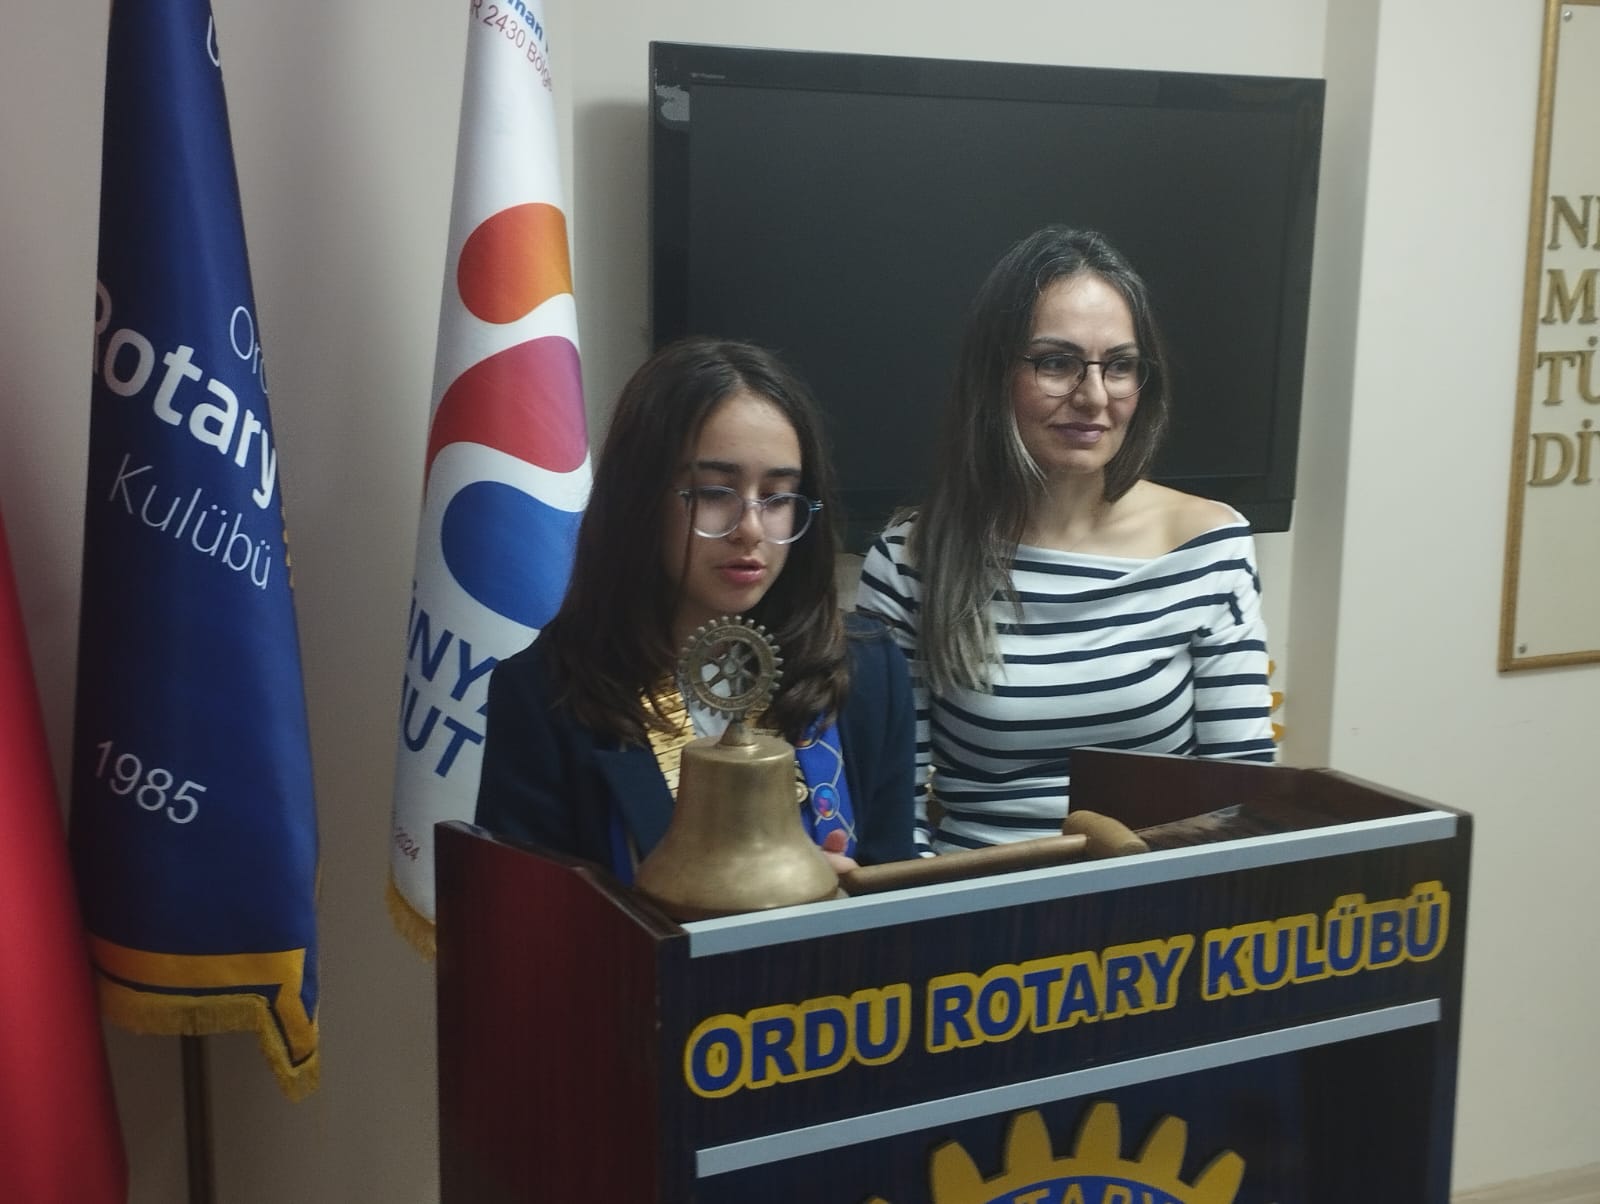 Ordu Rotary Kulübünün 23 Nisan Ulusal Egemenlik ve Çocuk Bayramında başkanı Neva Yılmaz oldu.